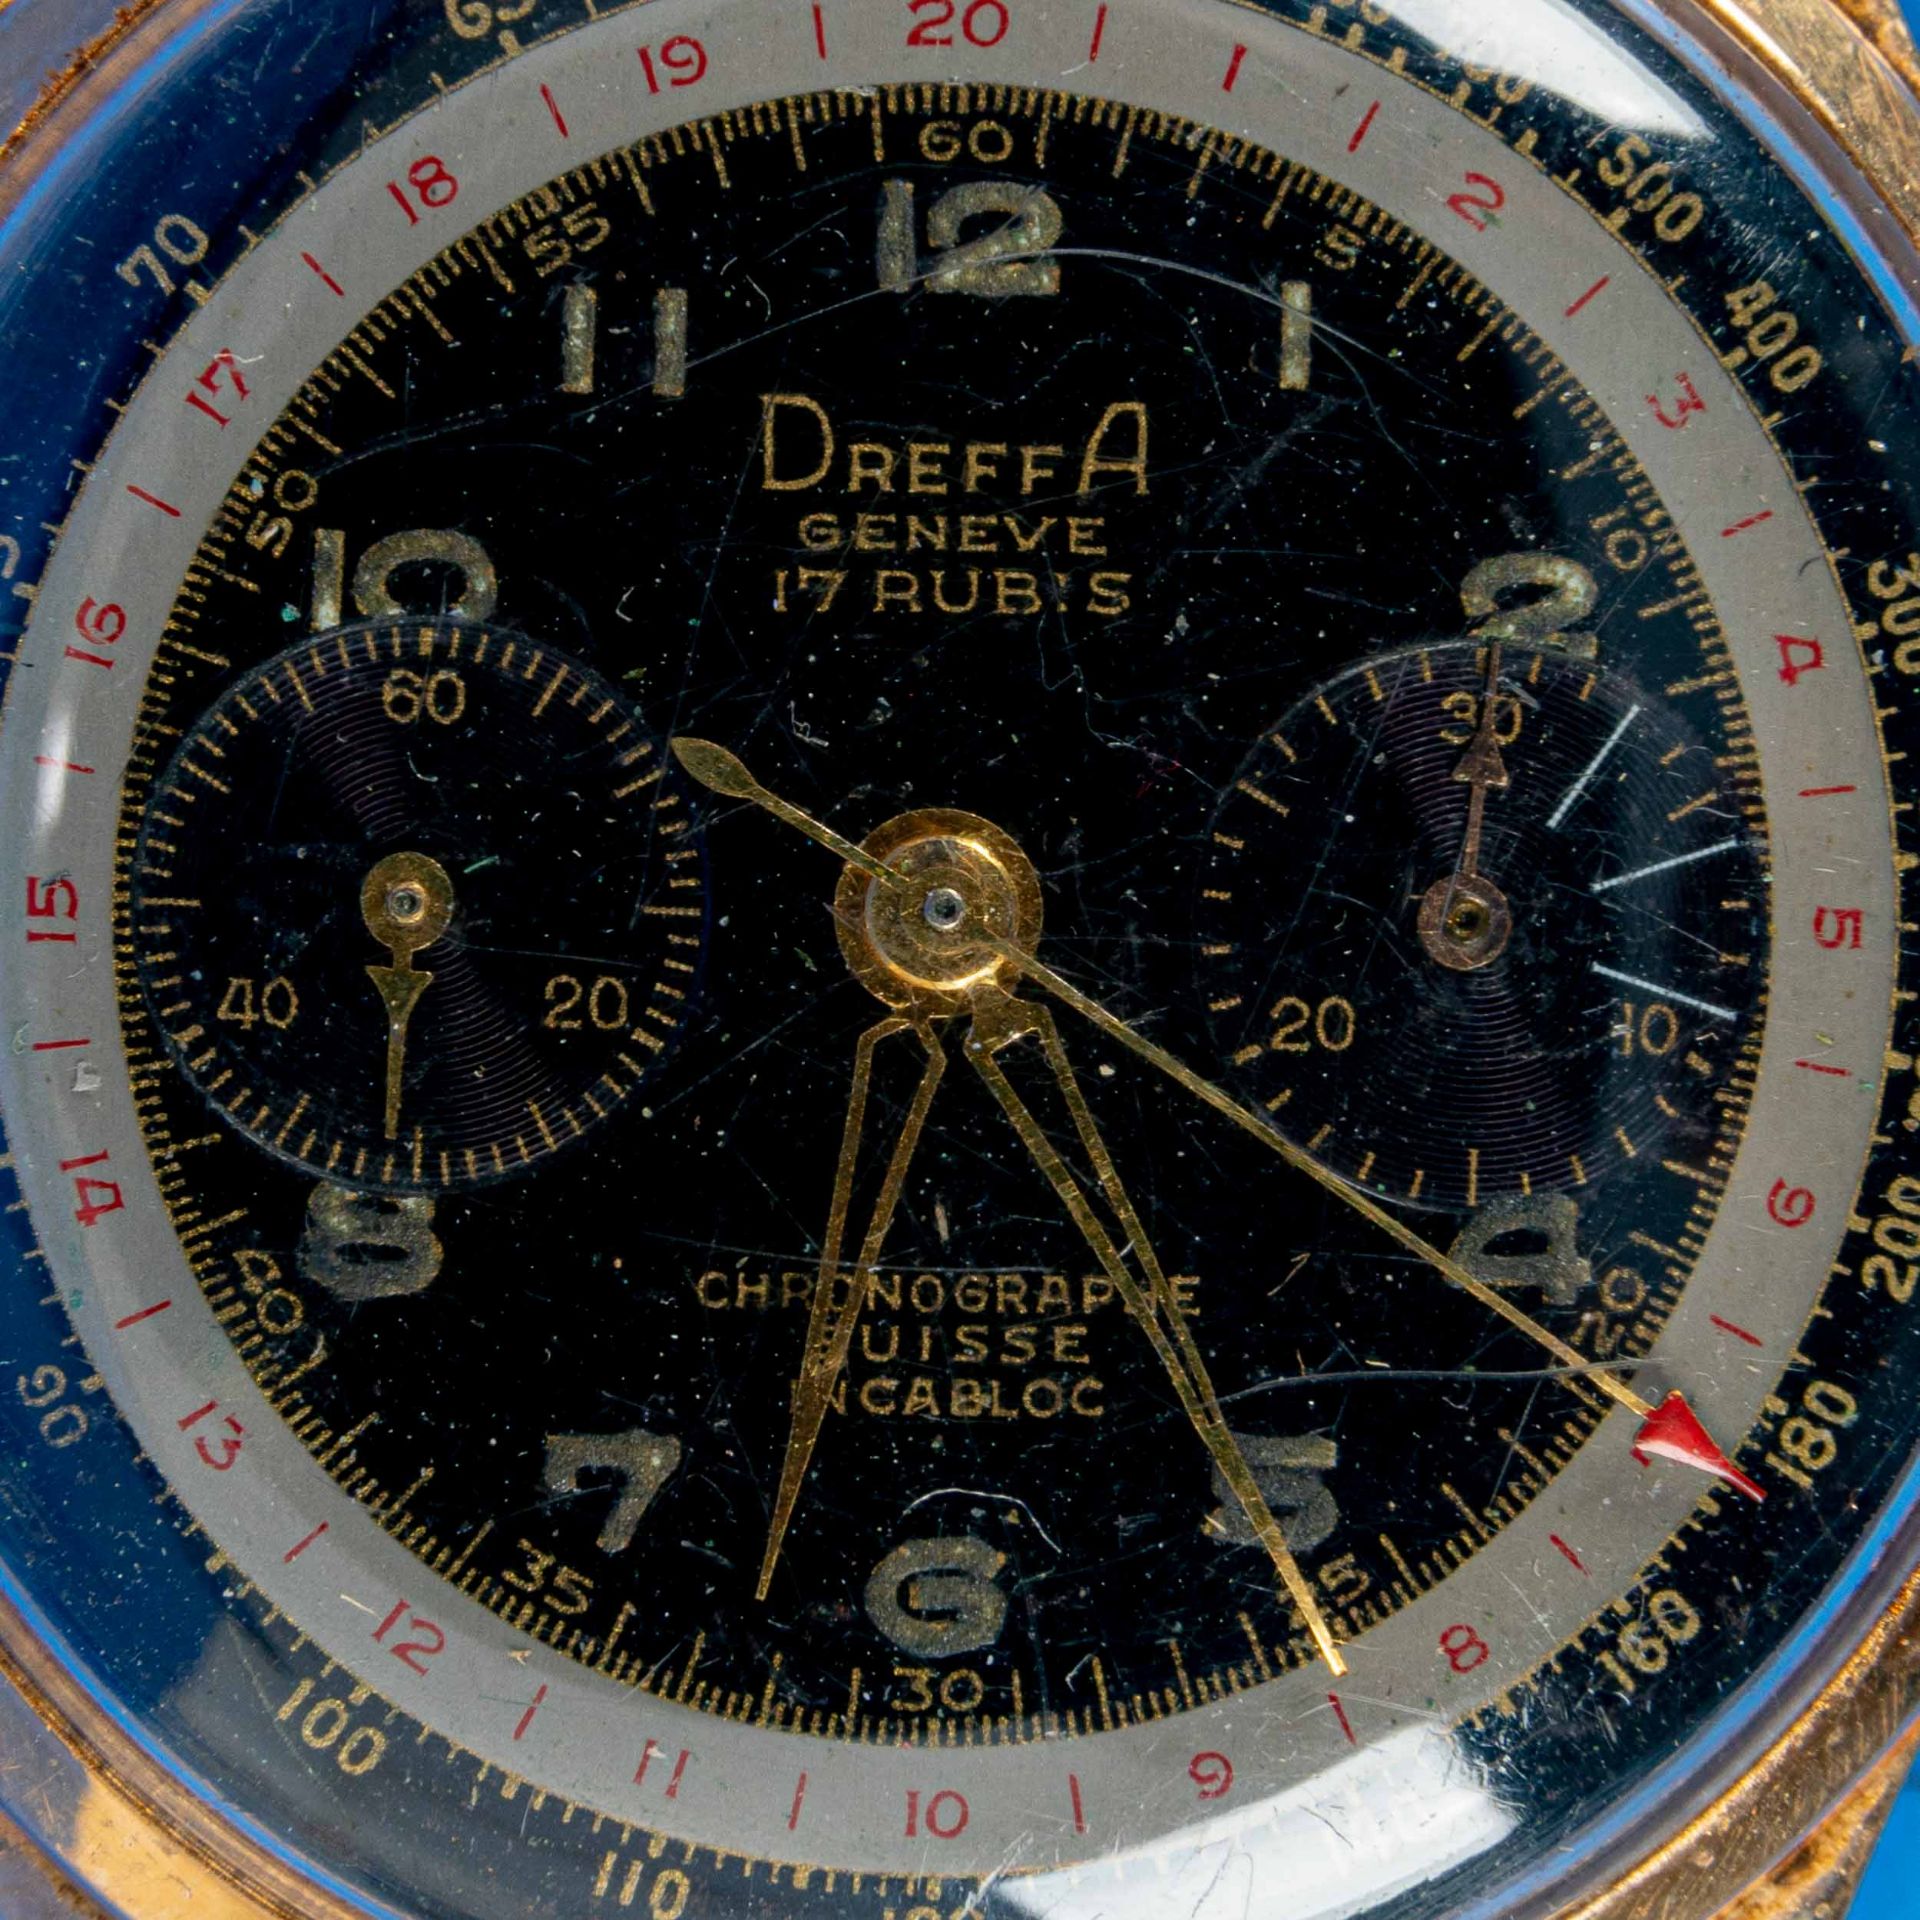 "DREFFA" - Chronograph Herrenarmbanduhr. Ungeprüftes Uhrwerk in 18 k Gelbgoldgehäuse an getragenem 